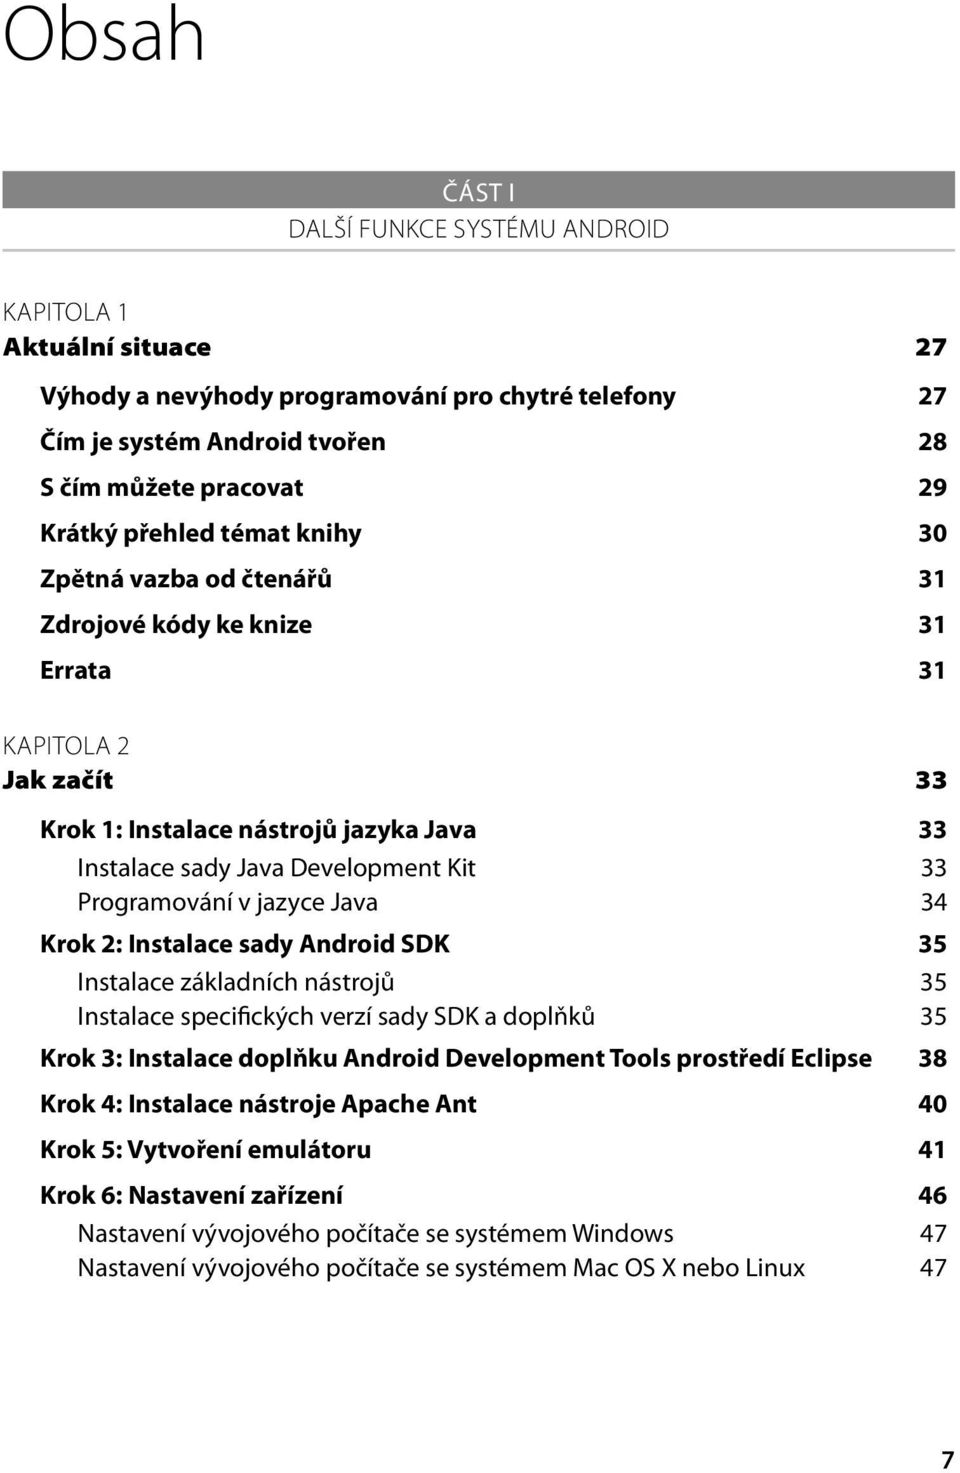 jazyce Java 34 Krok 2: Instalace sady Android SDK 35 Instalace základních nástrojů 35 Instalace specifických verzí sady SDK a doplňků 35 Krok 3: Instalace doplňku Android Development Tools prostředí